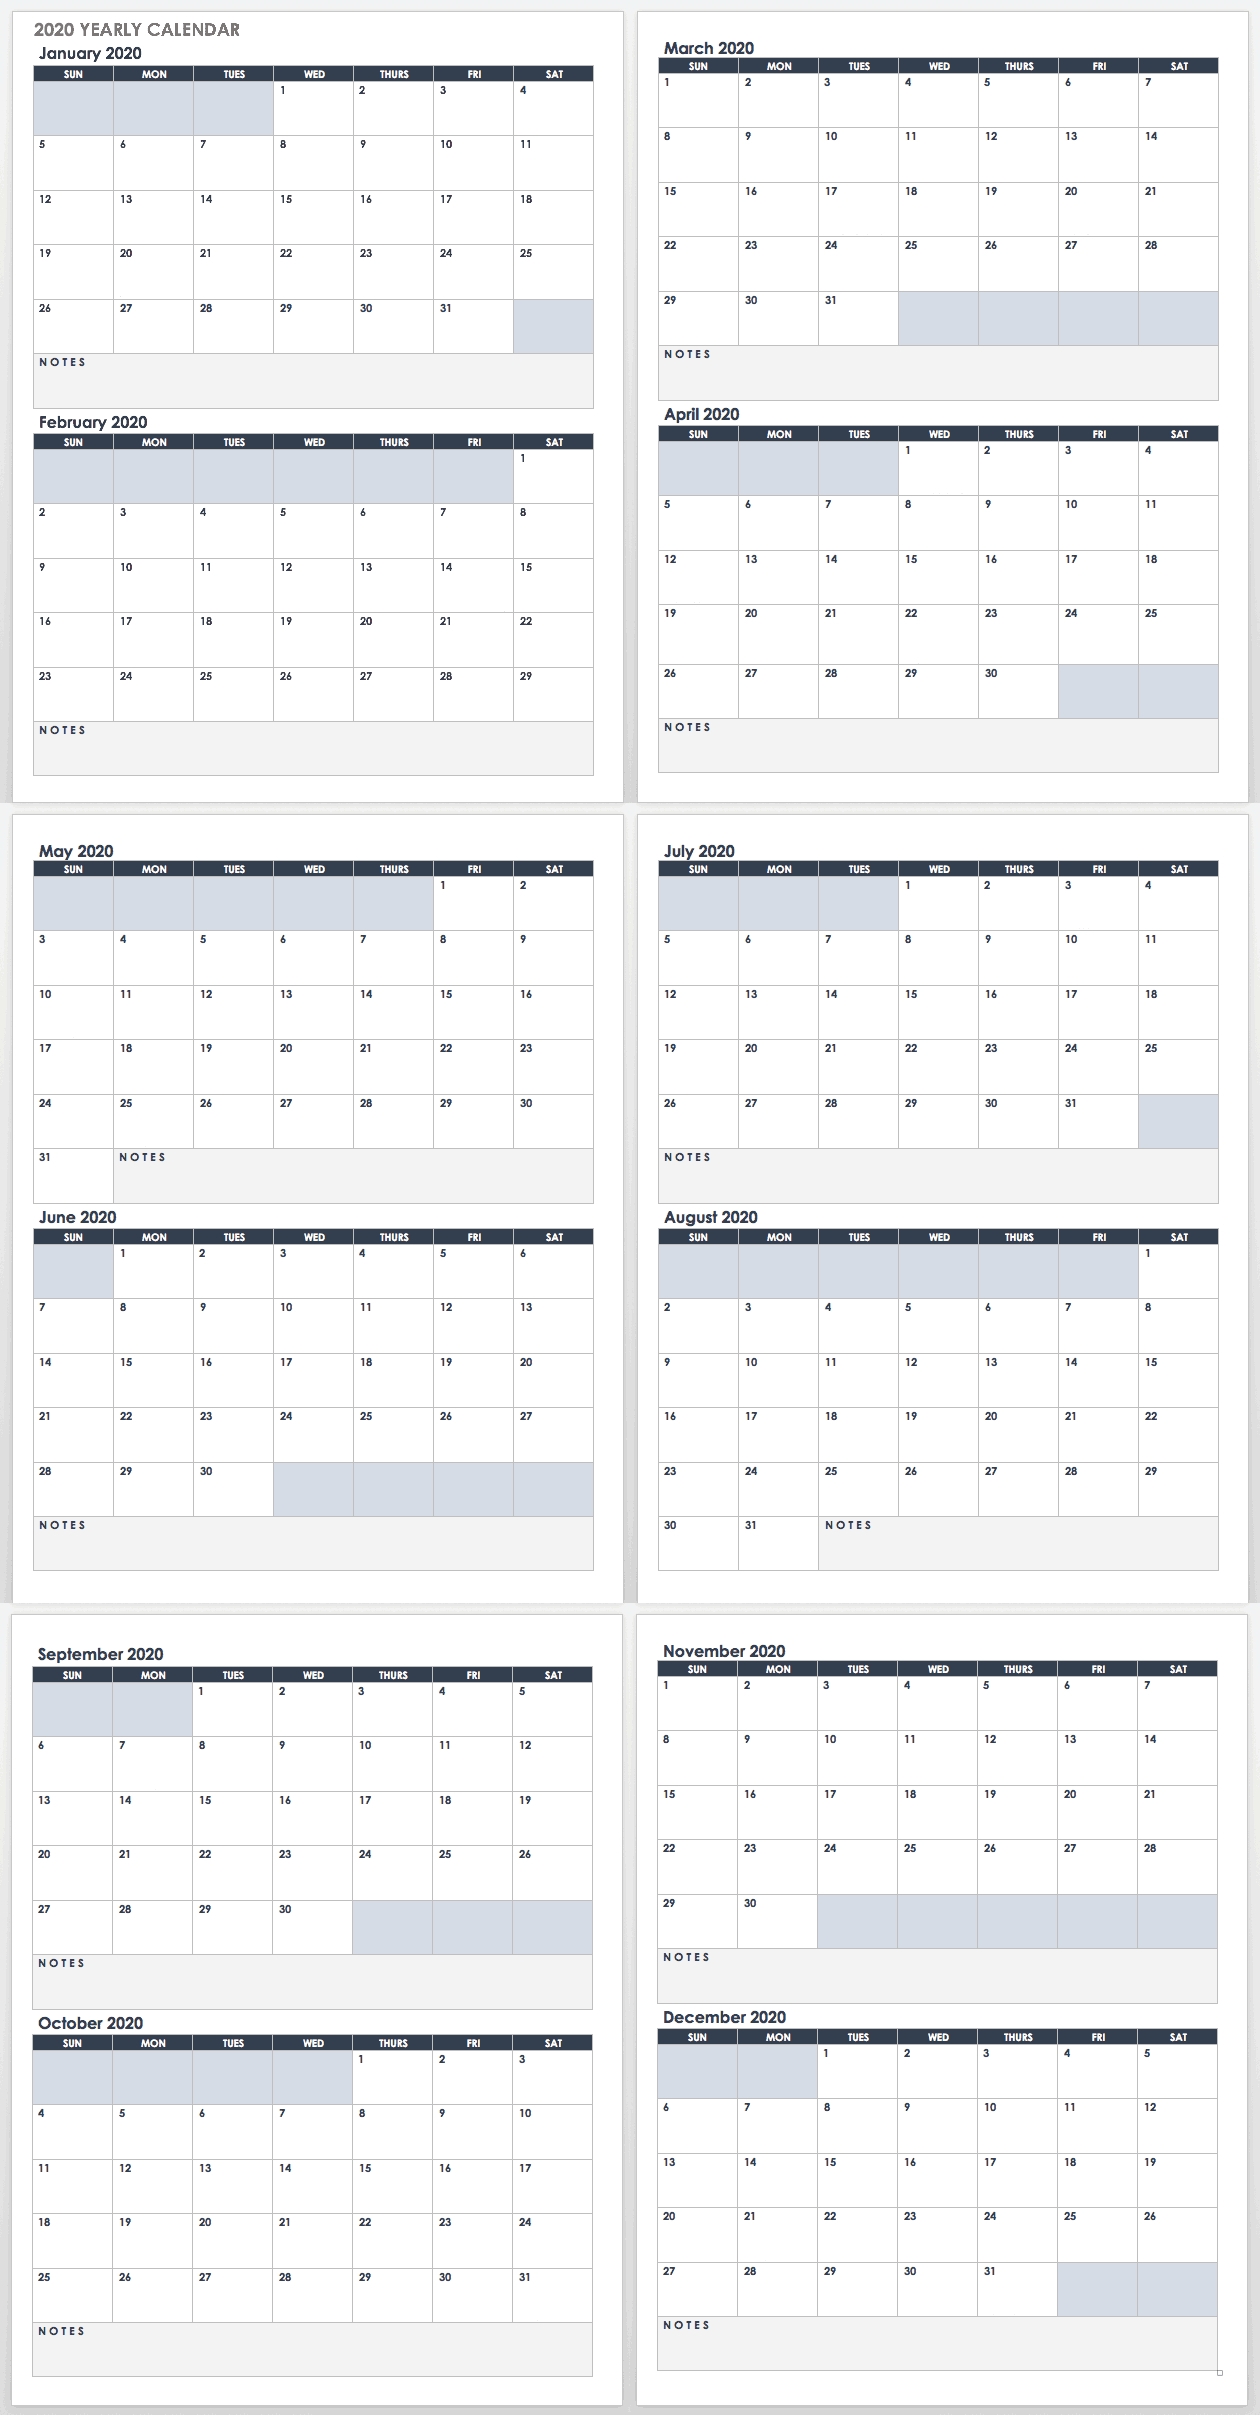 2020 Employee Attendance Calendar Free | Calendar For Planning with Employee Attendance Calendar 2020 Printable Free